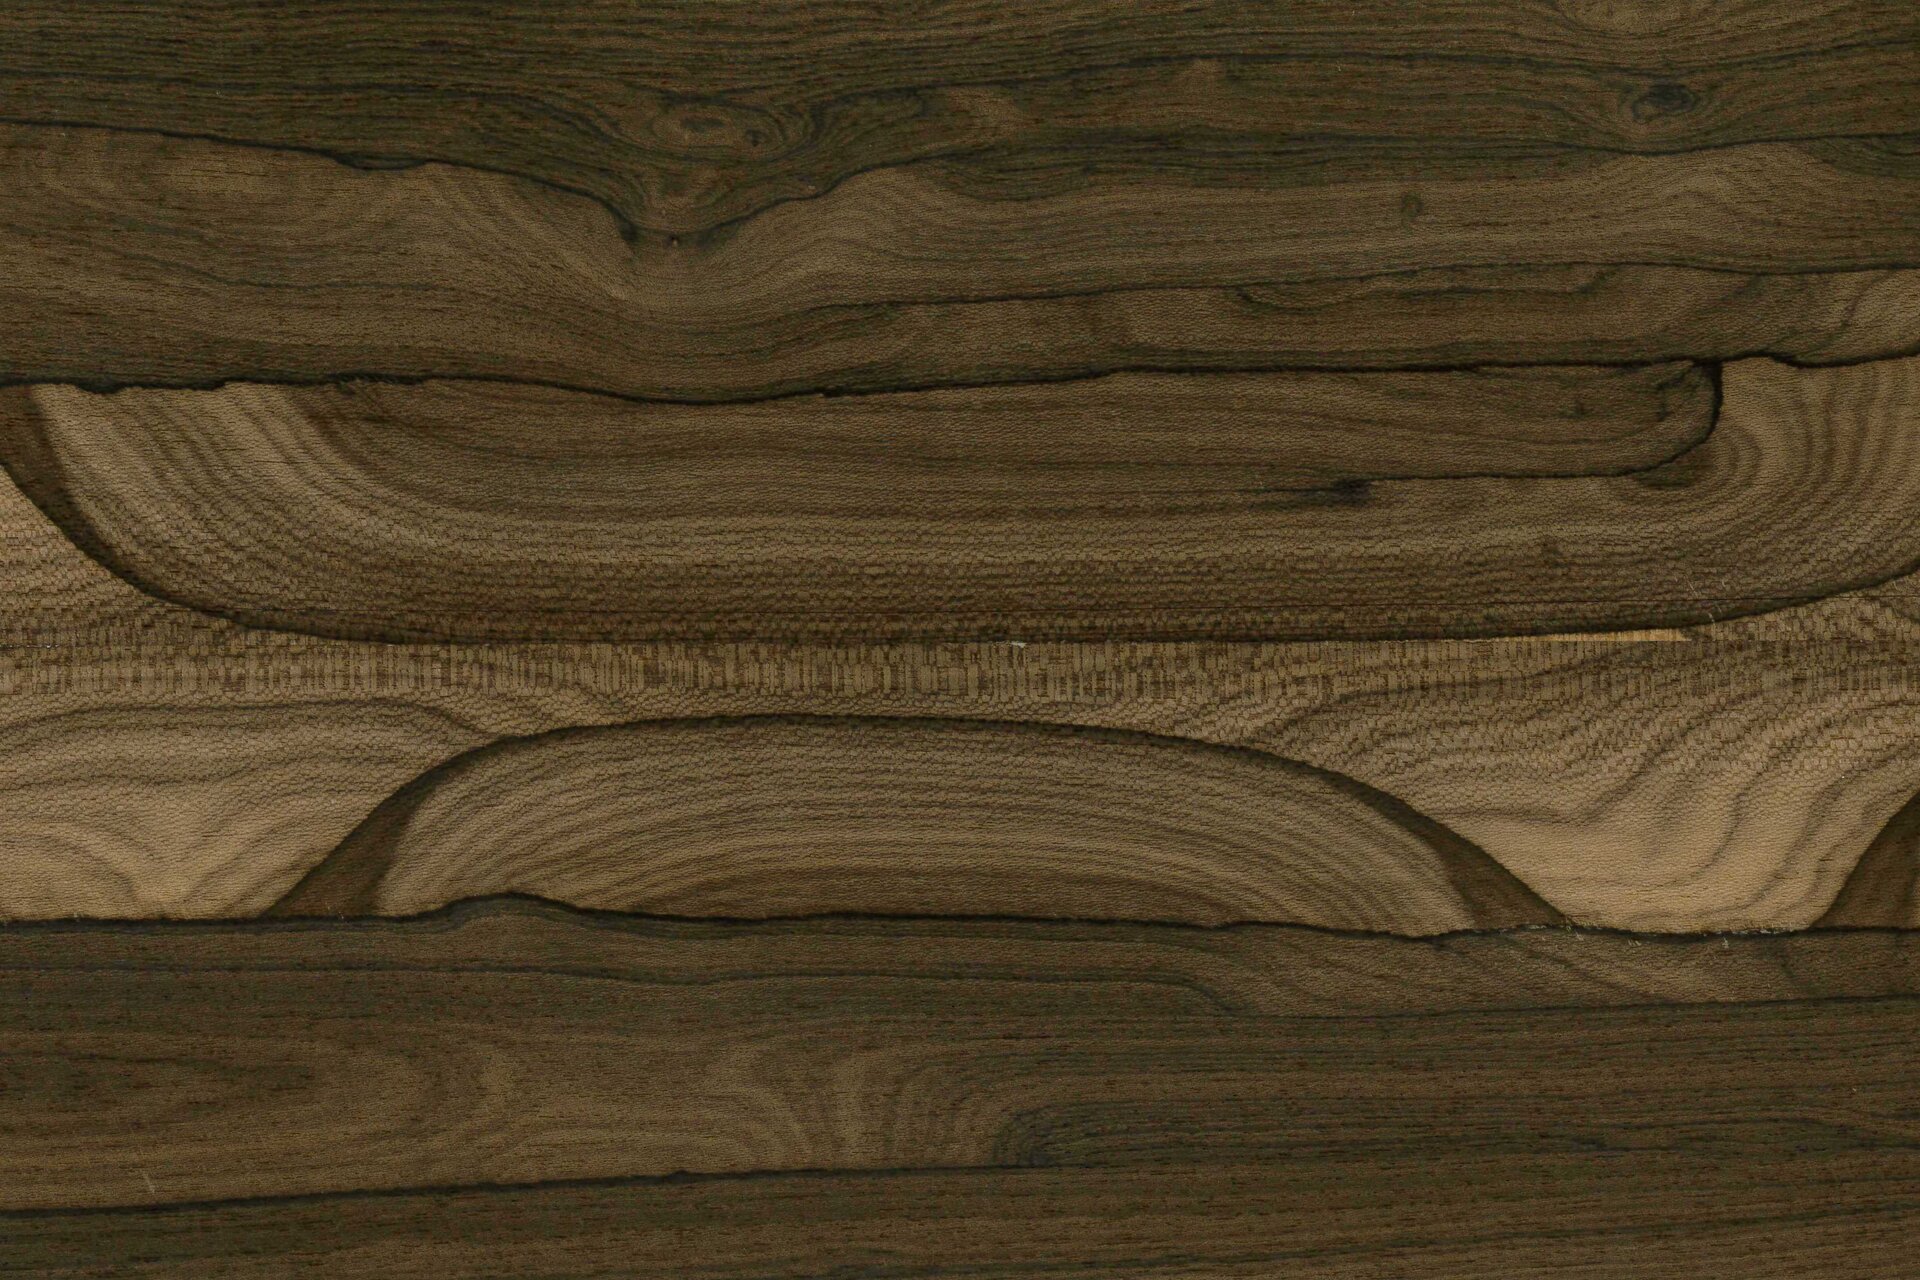 Zdjęcie przedstawia zbliżenie na okleinę imitującą drewno. Jest to cienki arkusz forniru. Okleina charakteryzuje się wzorem i teksturą przypominającą prawdziwe drewno. Posiada ona na swojej powierzchni między innymi słoje.